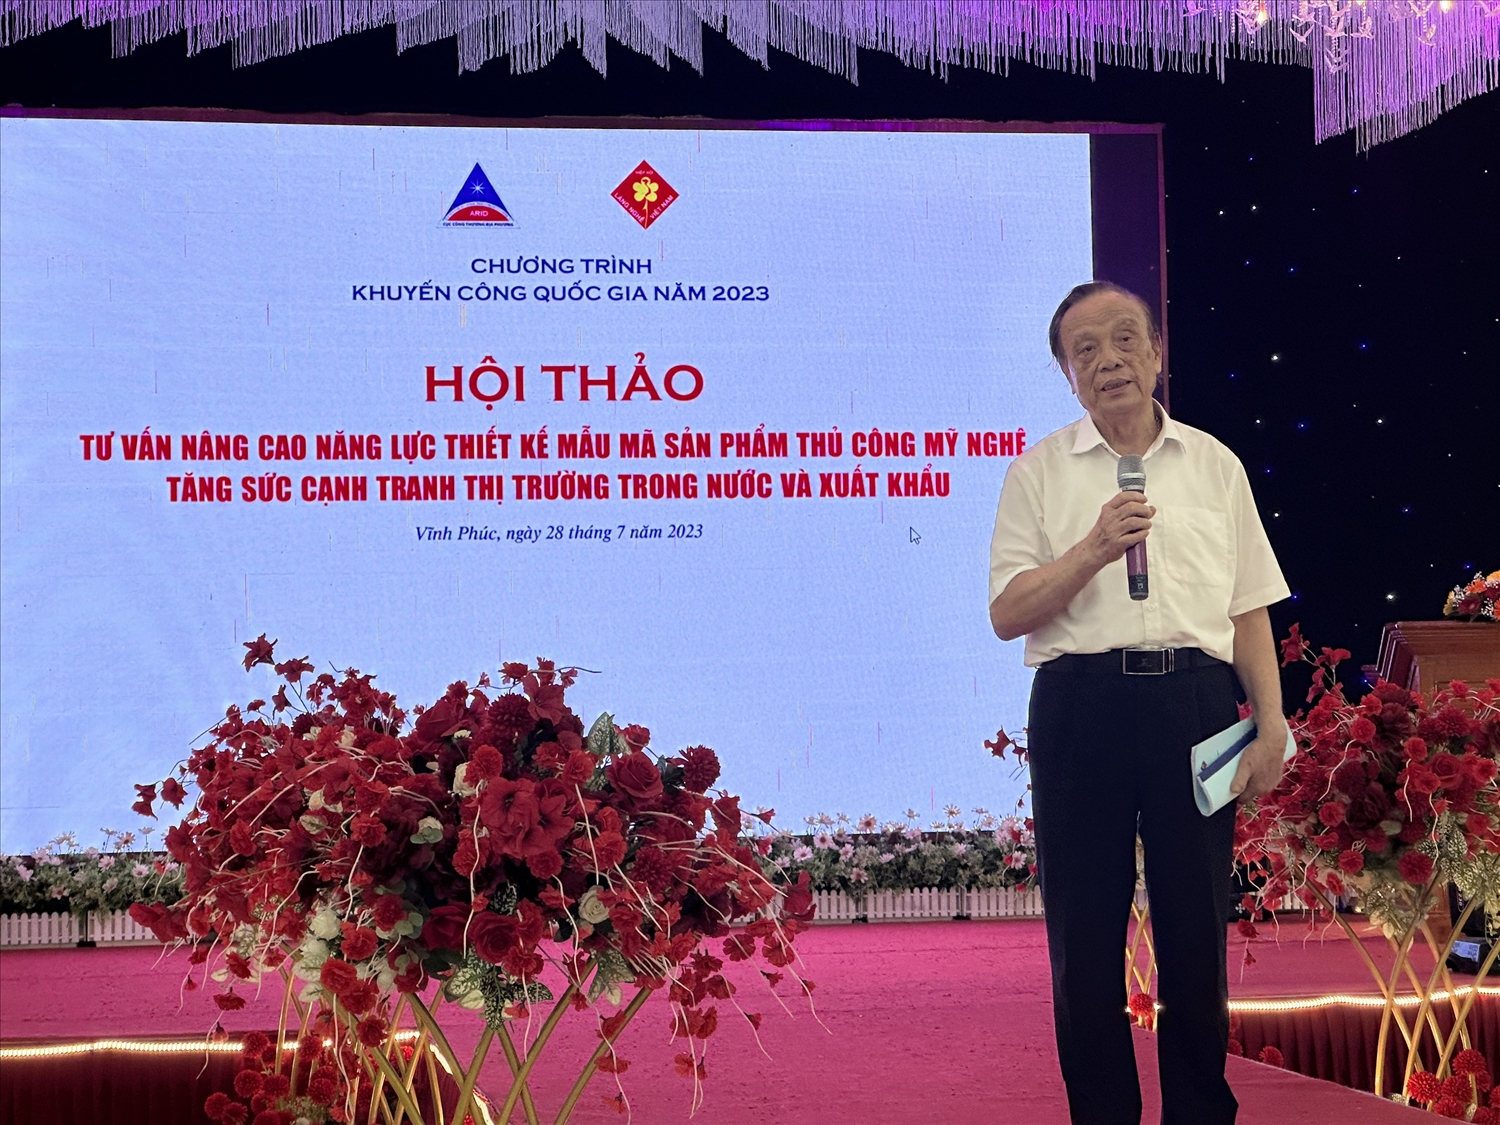 Theo Chủ tịch Hiệp hội Làng nghề Việt Nam Lưu Duy Dần, các sản phẩm TCMN có thể mang lại lợi nhuận hơn nữa nếu được quan tâm đến kiểu dáng và mẫu mã